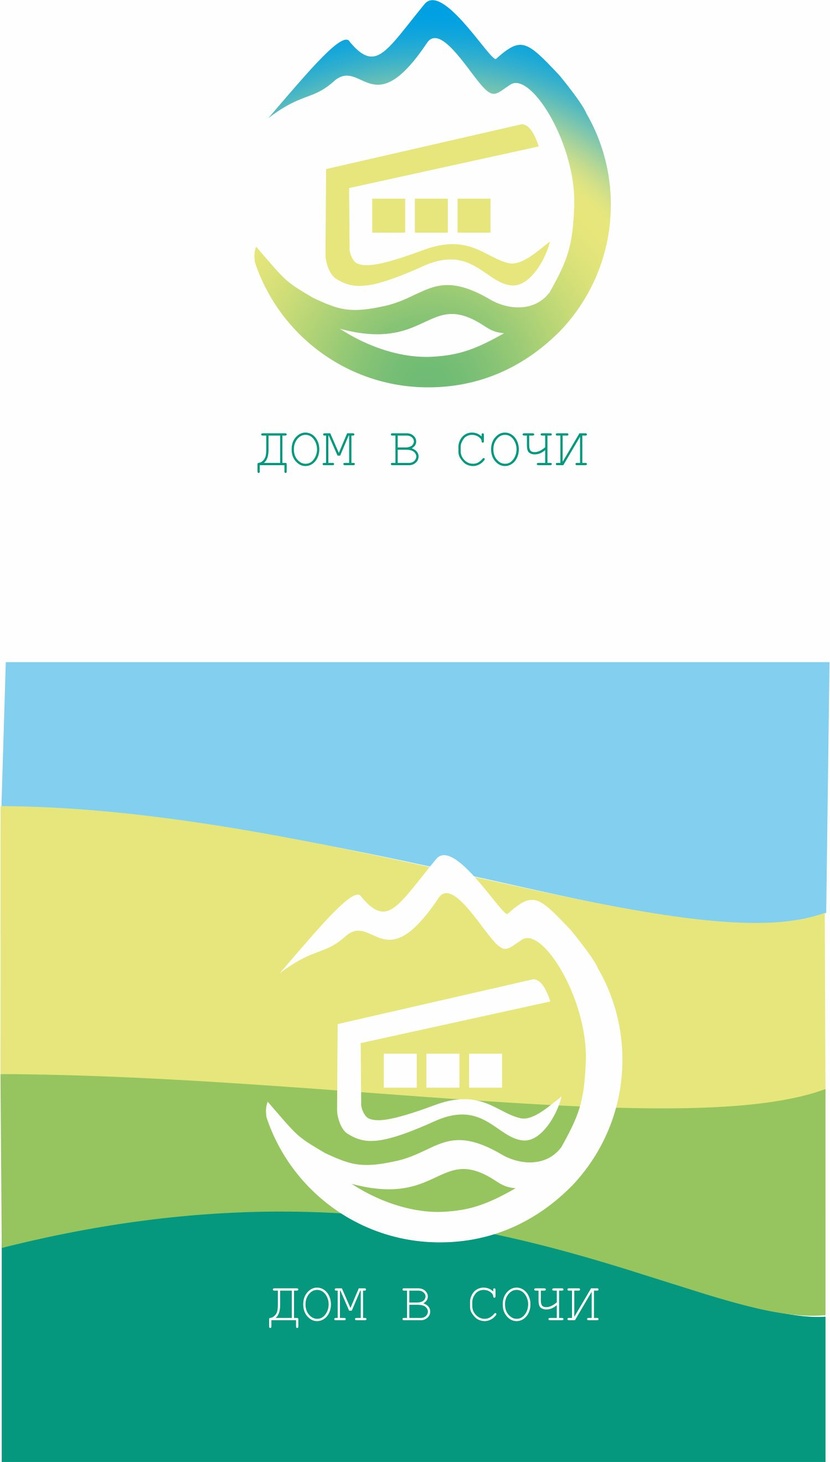 Главная концепция - строительство домов в уникальном регионе: море, горы. солнце - Логотип для строительной компании «Дом в Сочи»